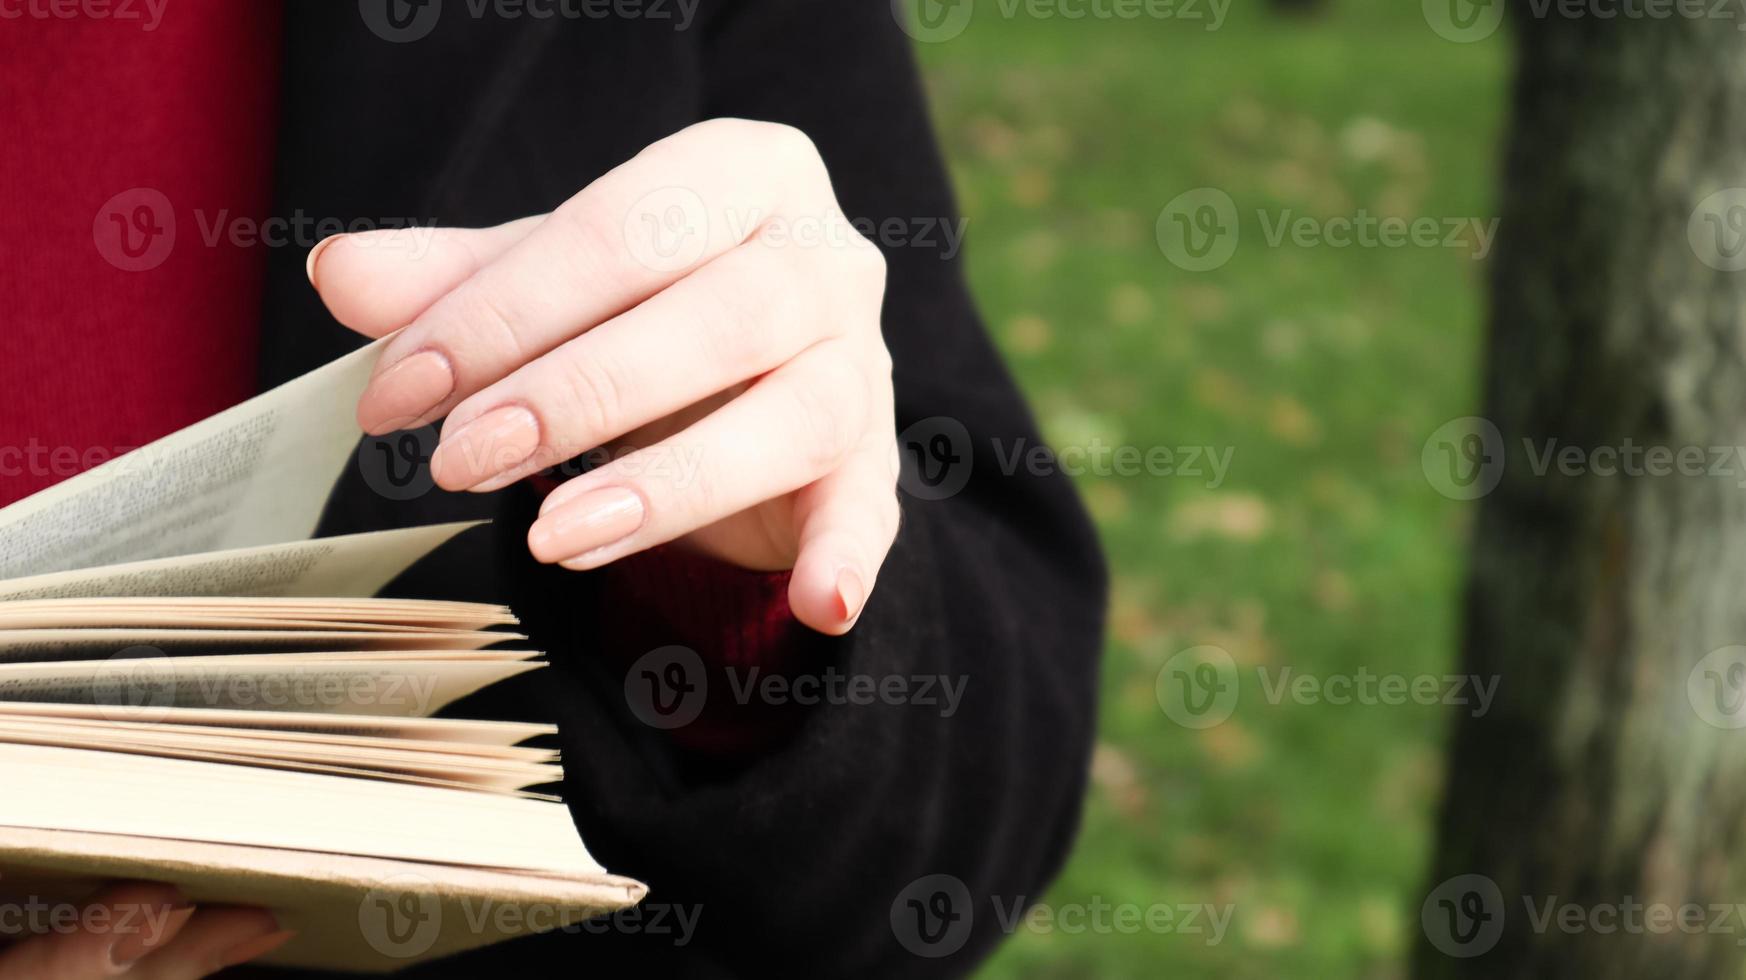 flicka läser en bok i parken. kvinnliga händer bläddra sidor av pappersbok utomhus. studenten förbereder sig för tentamen. litterär fritid i naturen. närbild, kopiera utrymme. foto